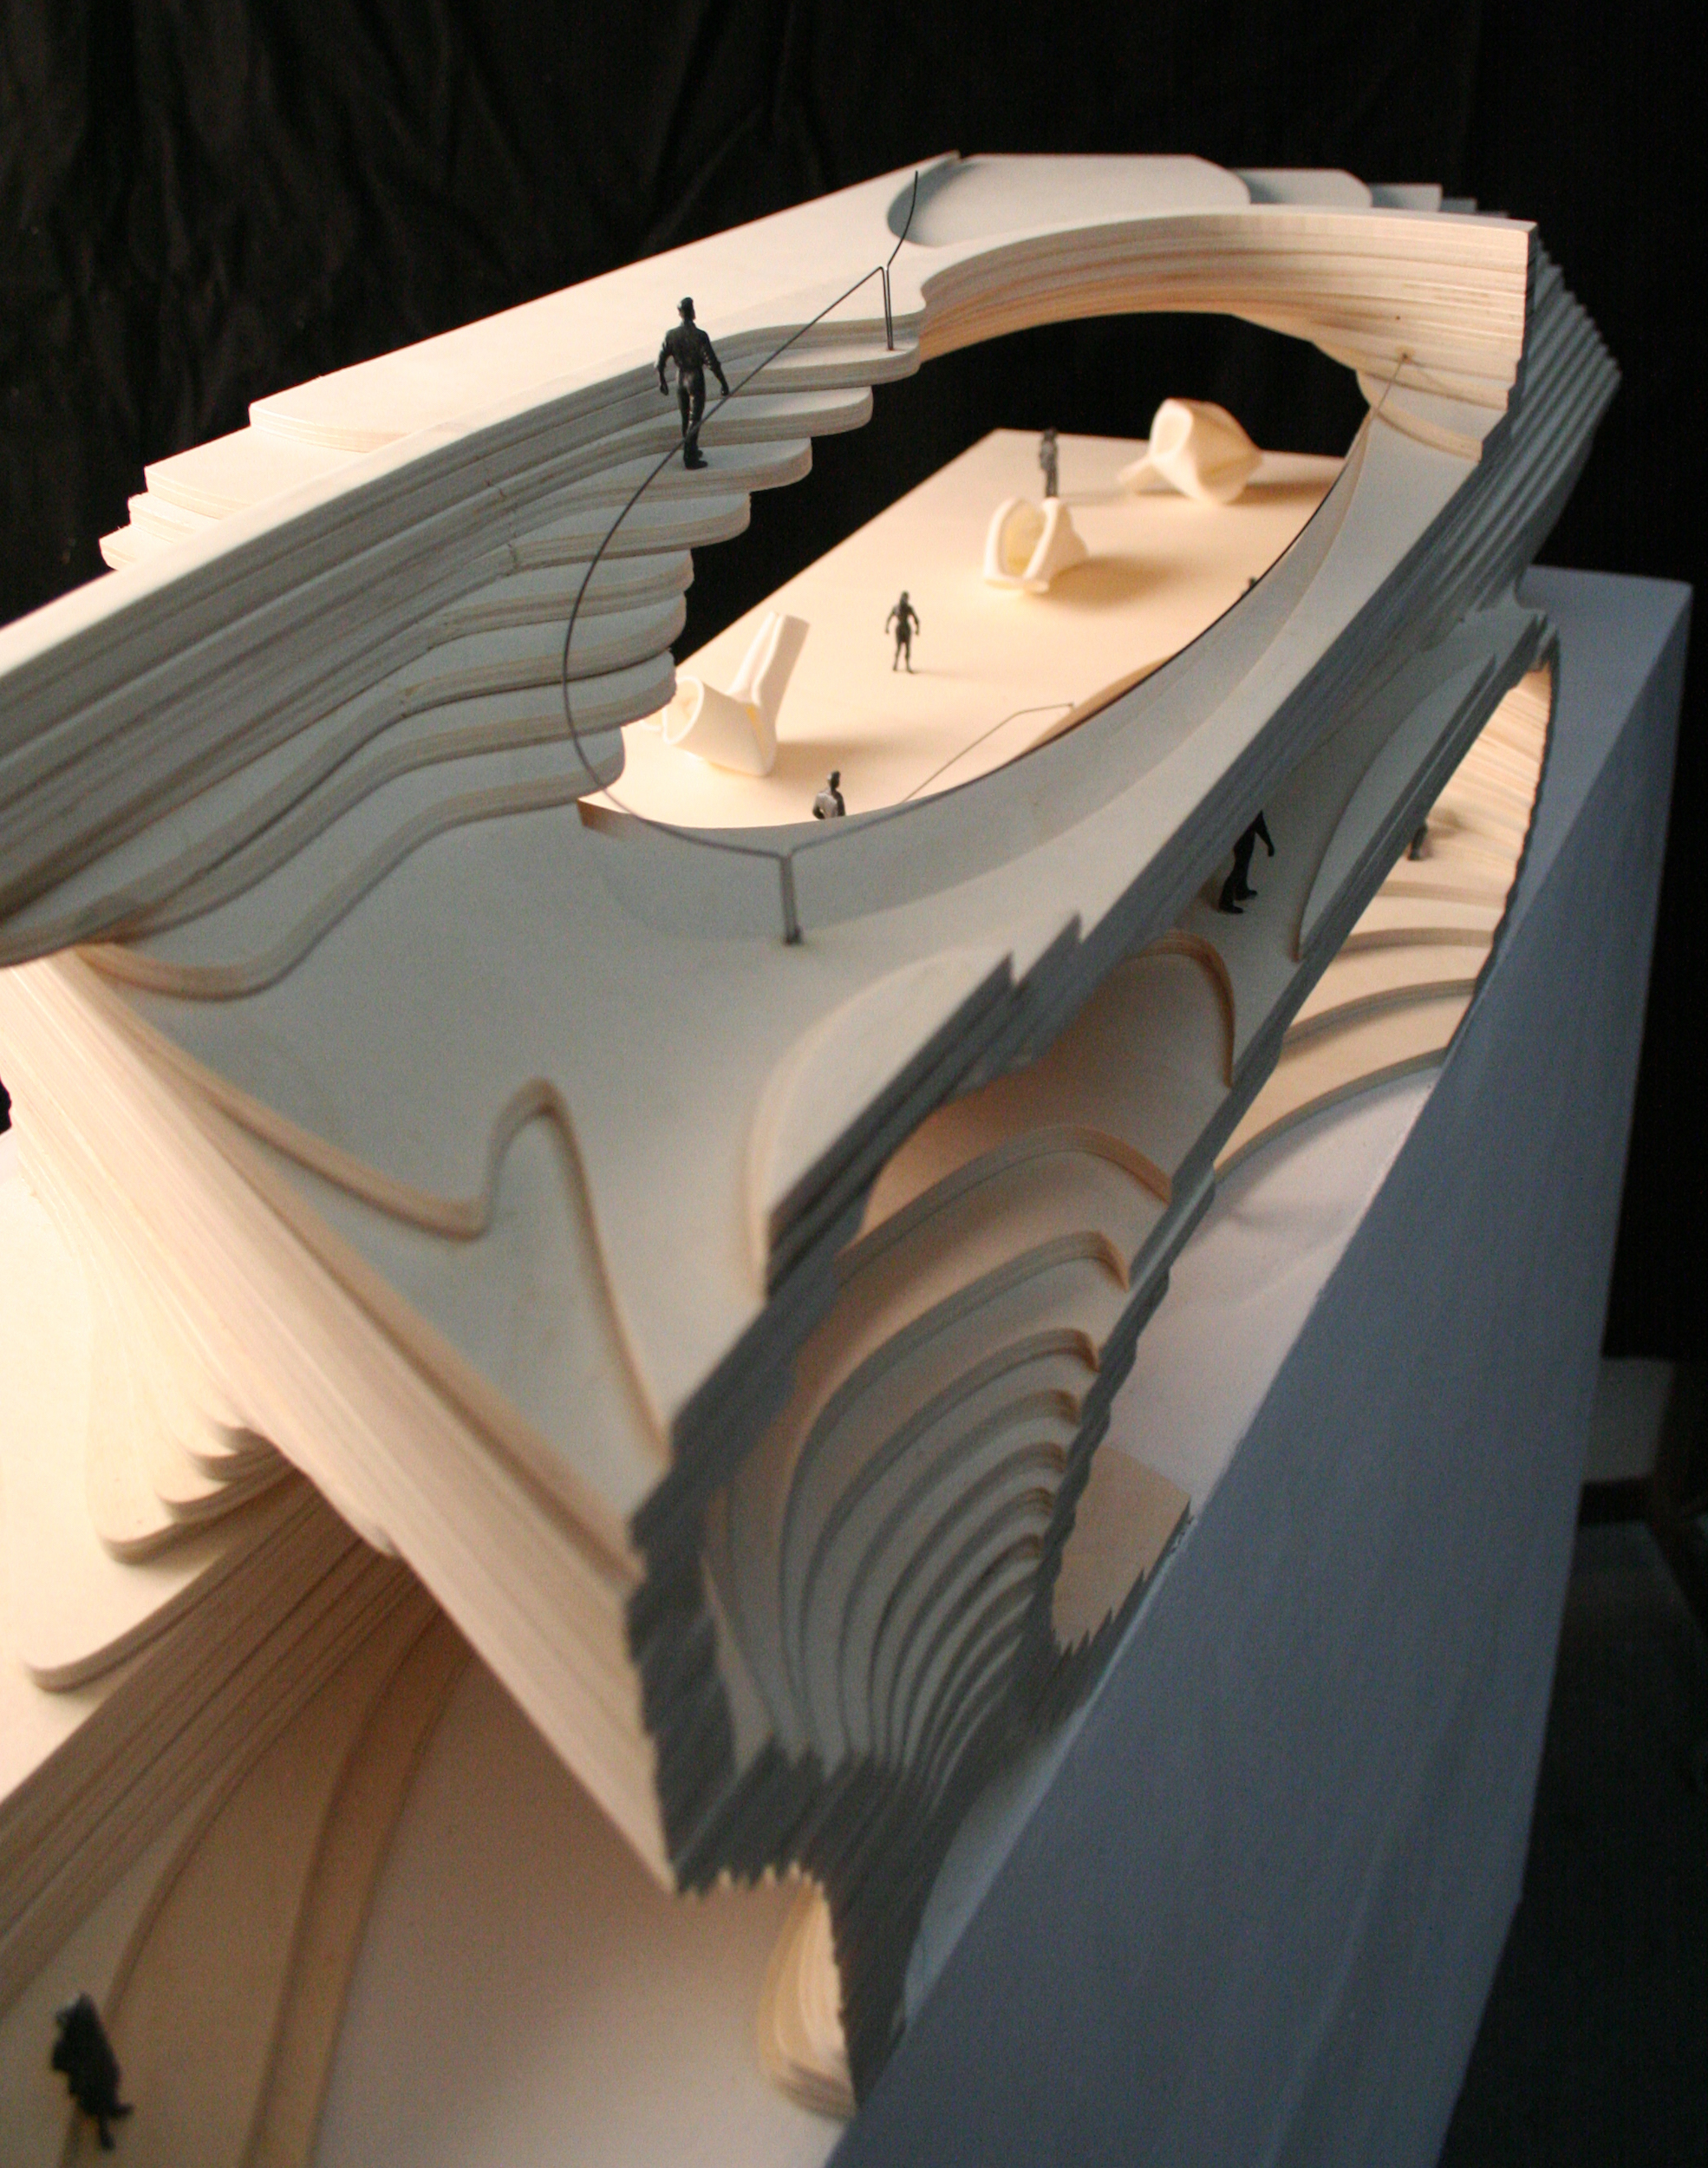 Interior Model. Scale 1:100